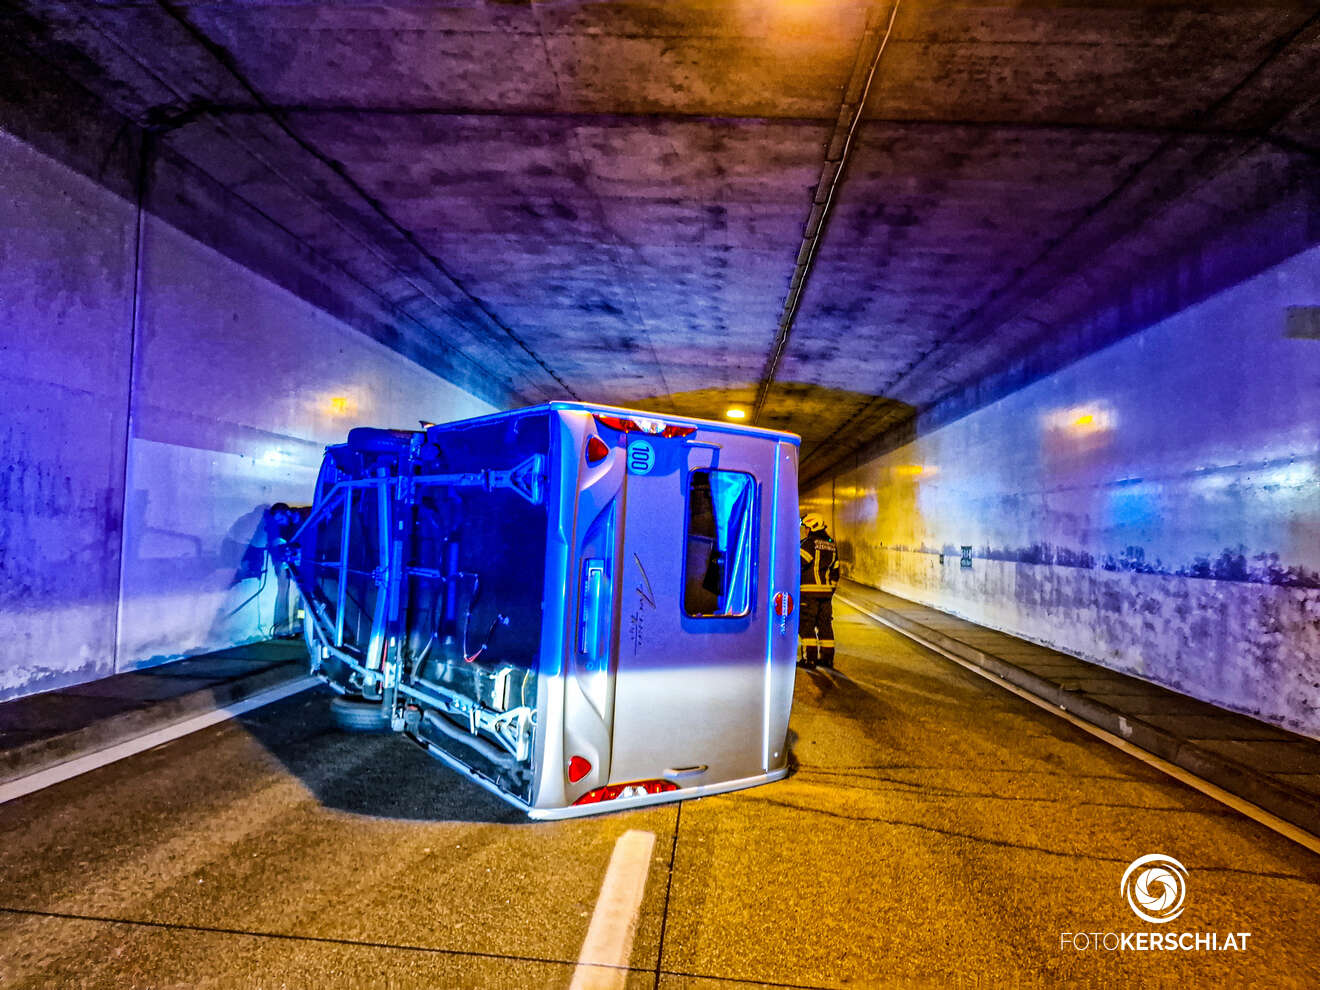 Wohnwagen im Tunnel umgestürzt